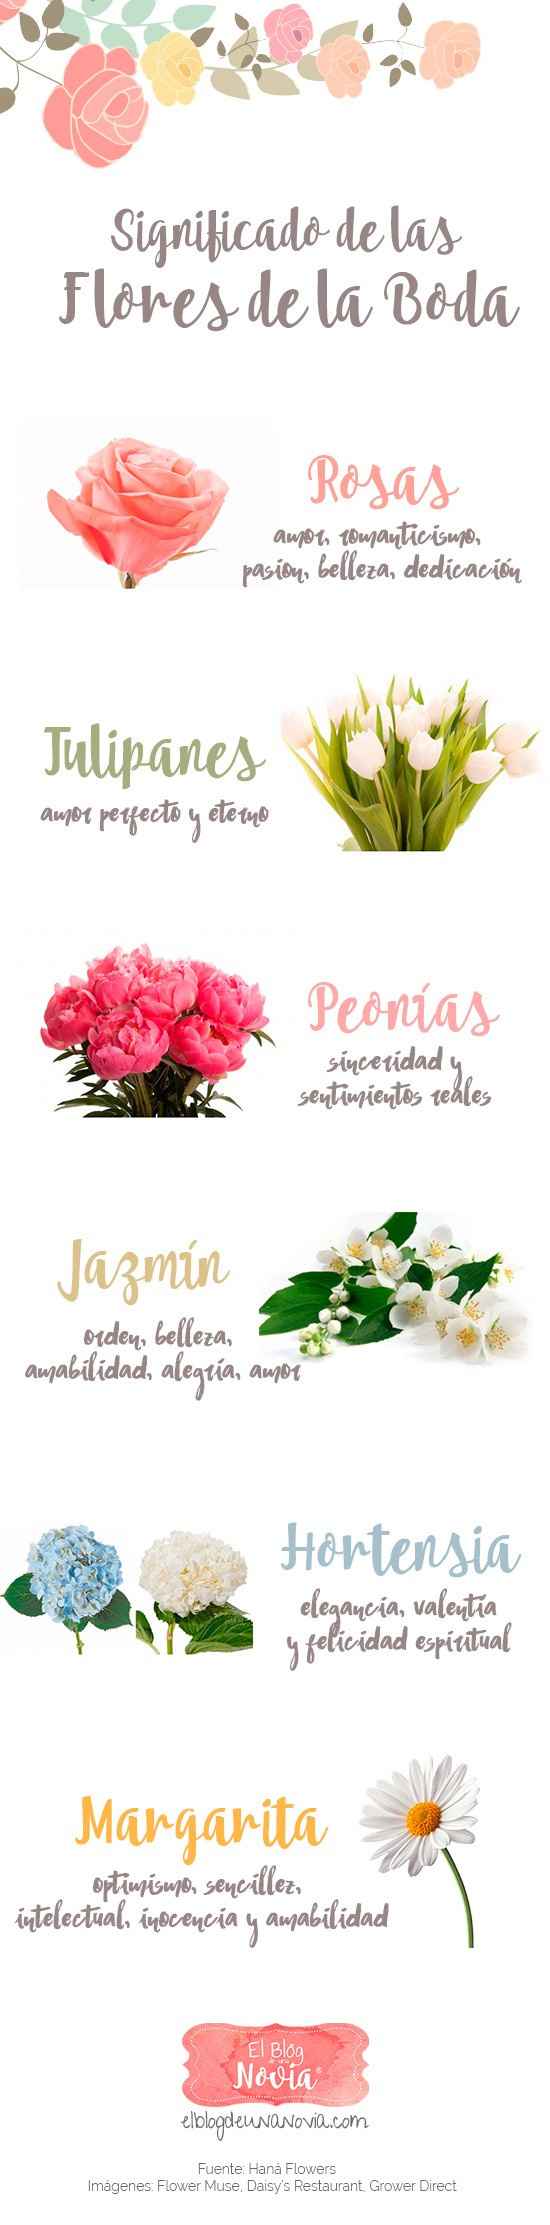 significado de las flores